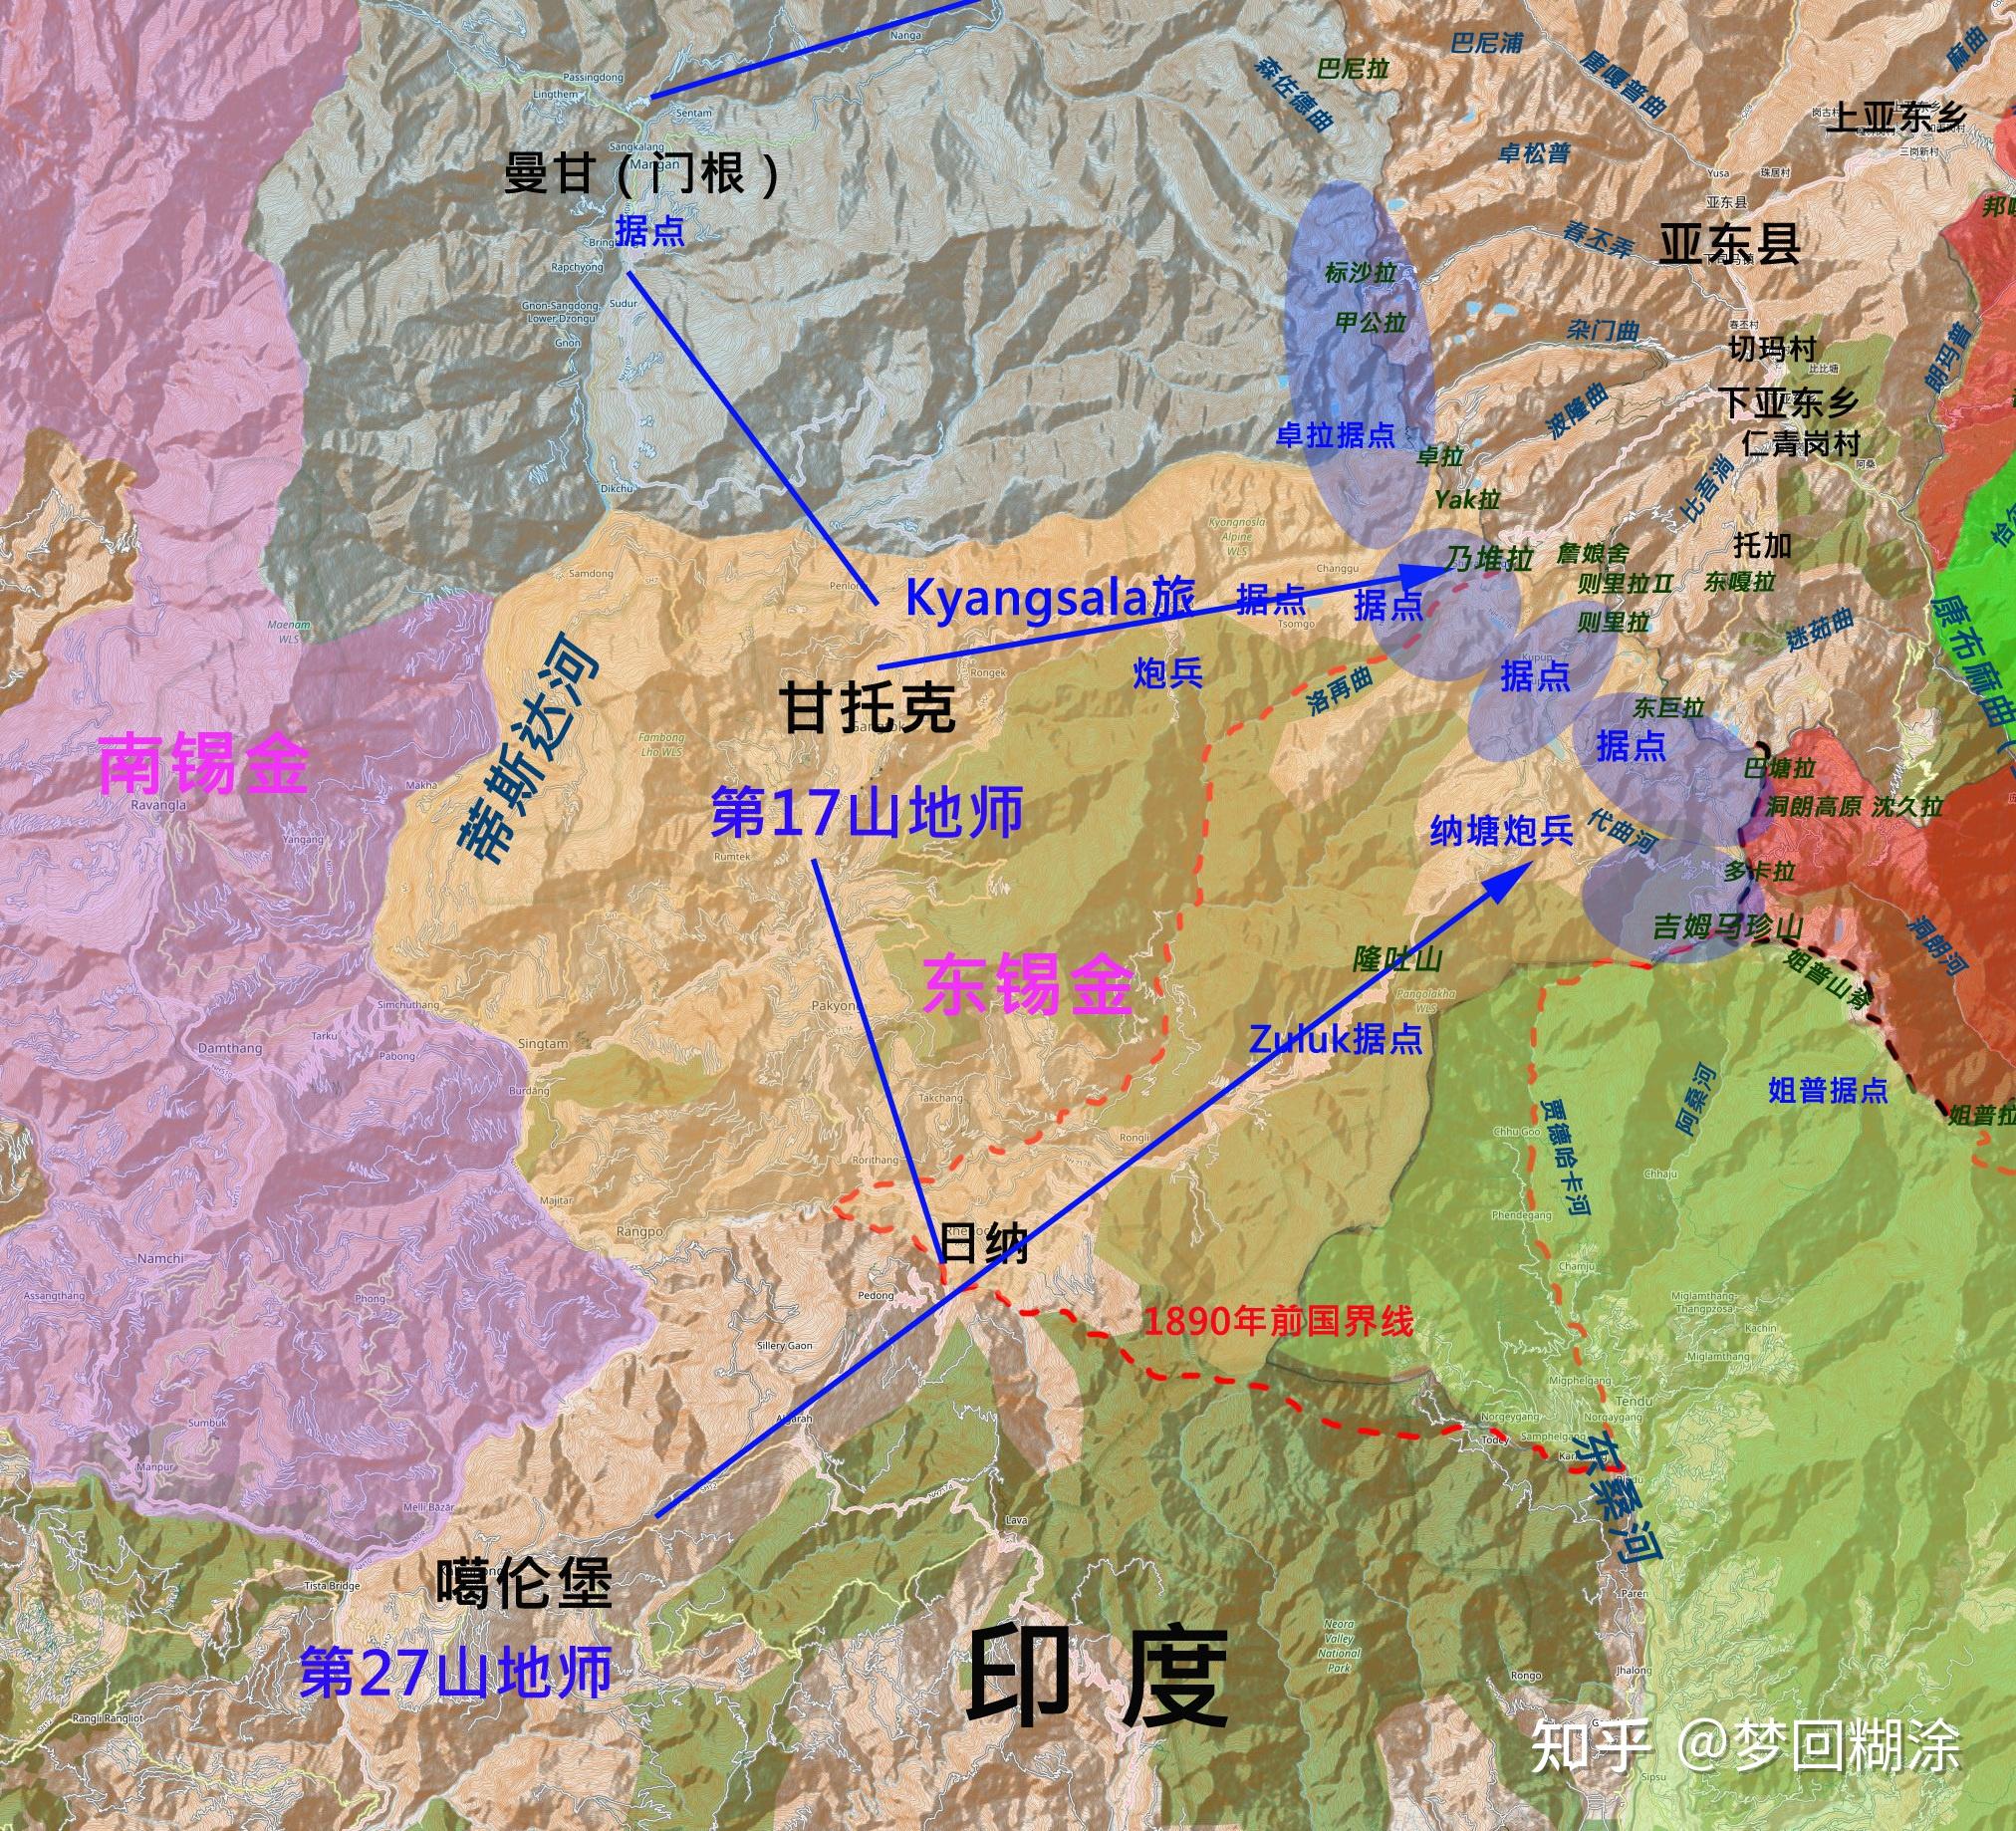 2016年西藏地球之巅—珠峰大本营、中尼边境、亚东9天深度摄影之旅 - 召集·约伴 - 华声论坛